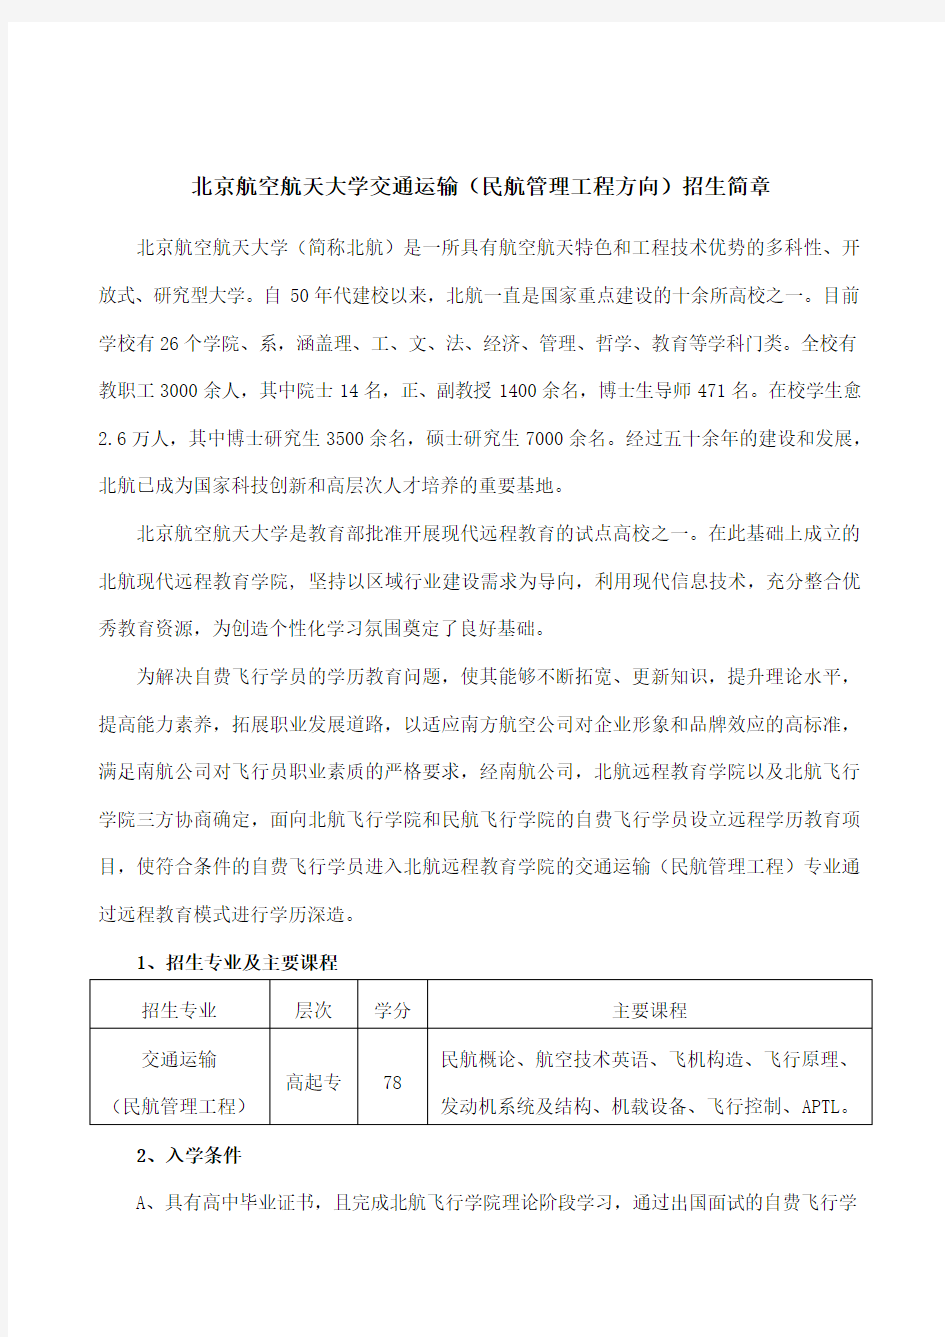 北京航空航天大学交通运输(民航管理工程方向)招生简章